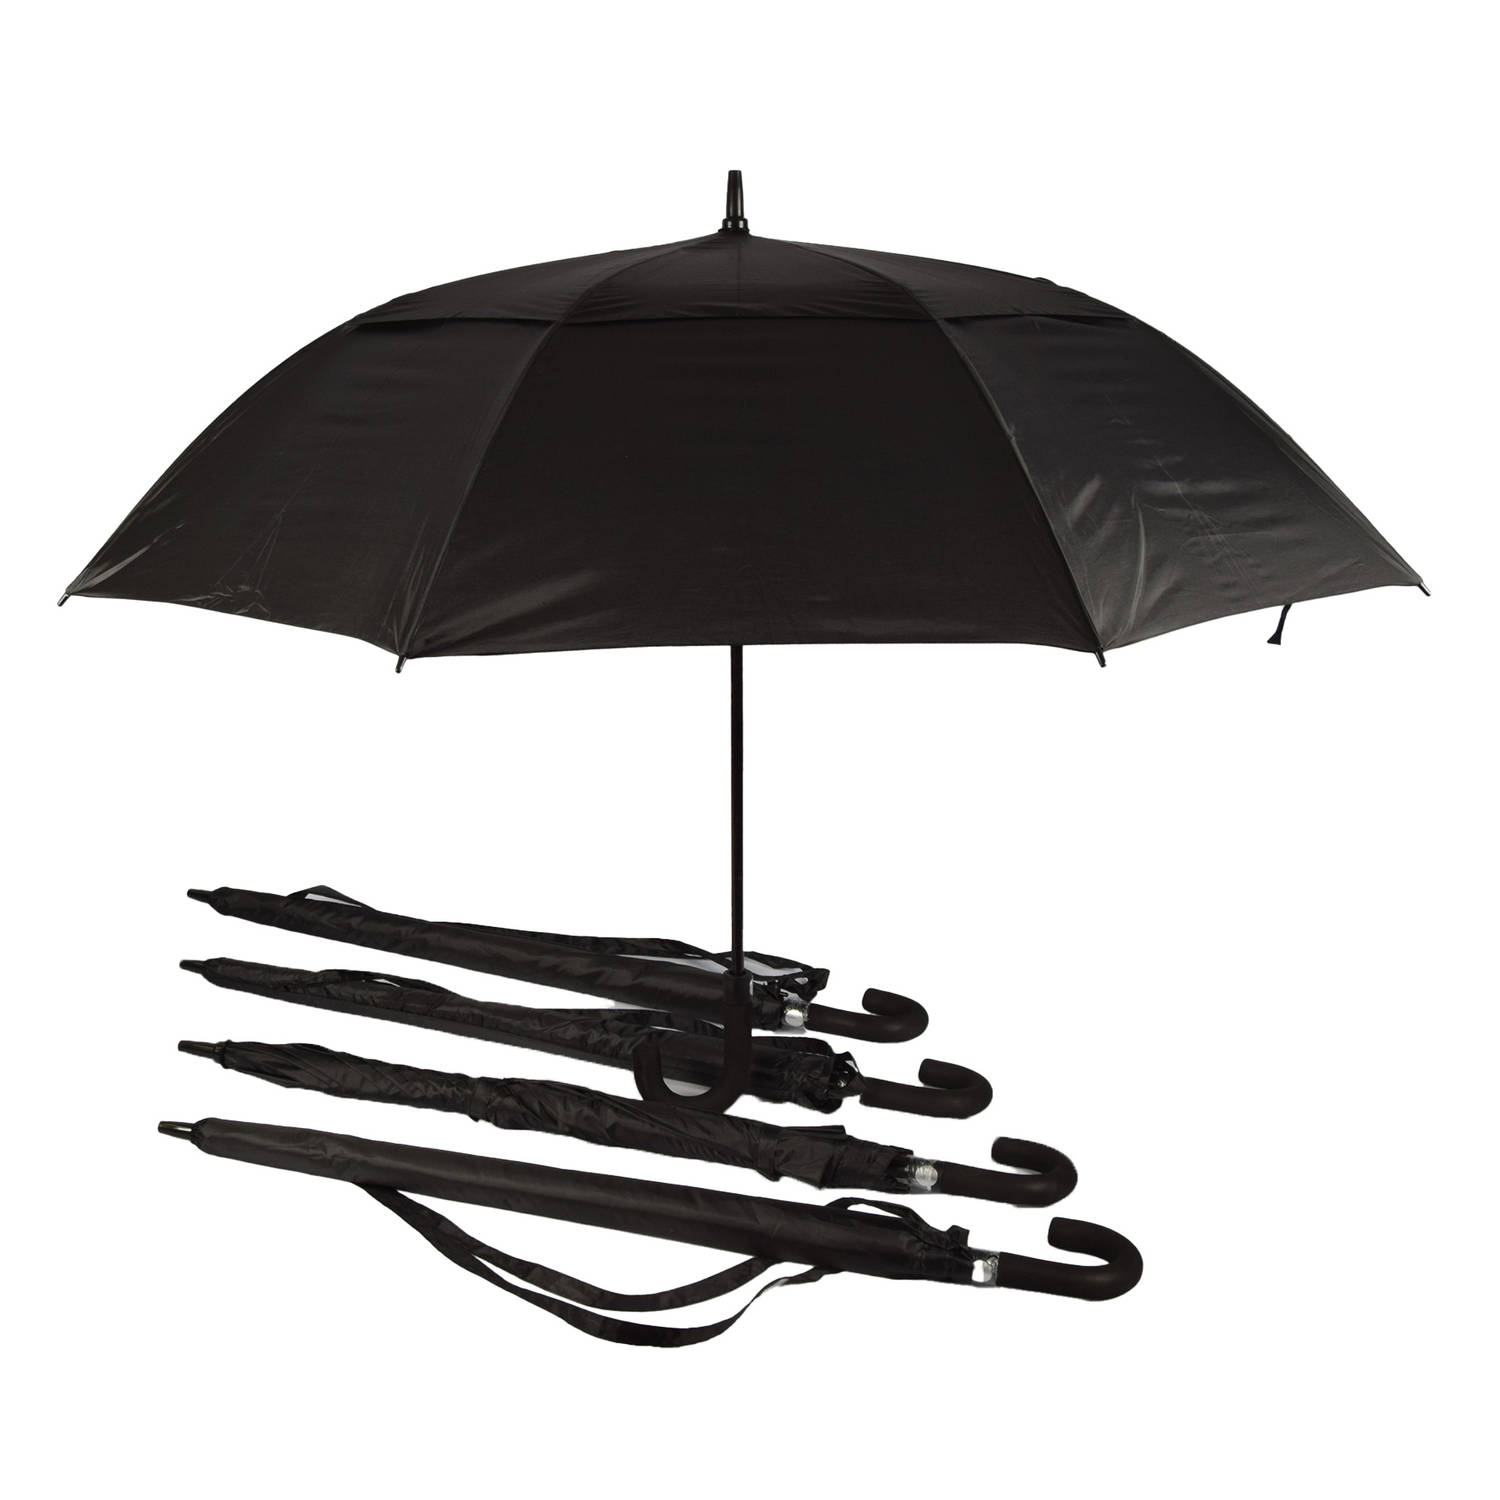 Set van 5 Automatische & Windproof Paraplu's - Opvouwbaar met Beschermhoes - Zwart - 130cm Diameter - Inclusief Paraplutas met Handgreep